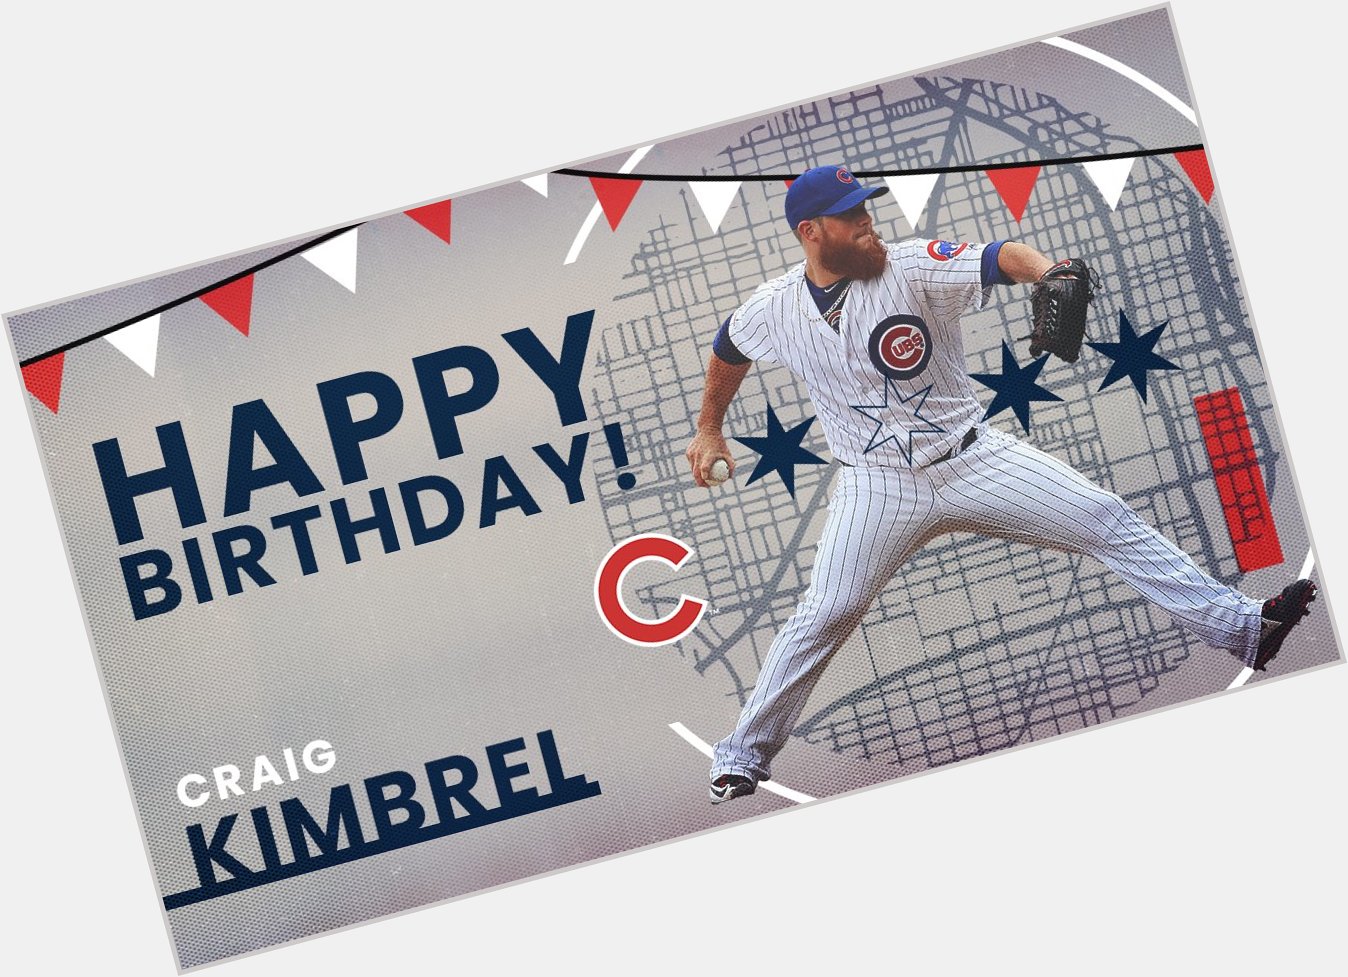 Wishing a very happy birthday to Craig Kimbrel! 